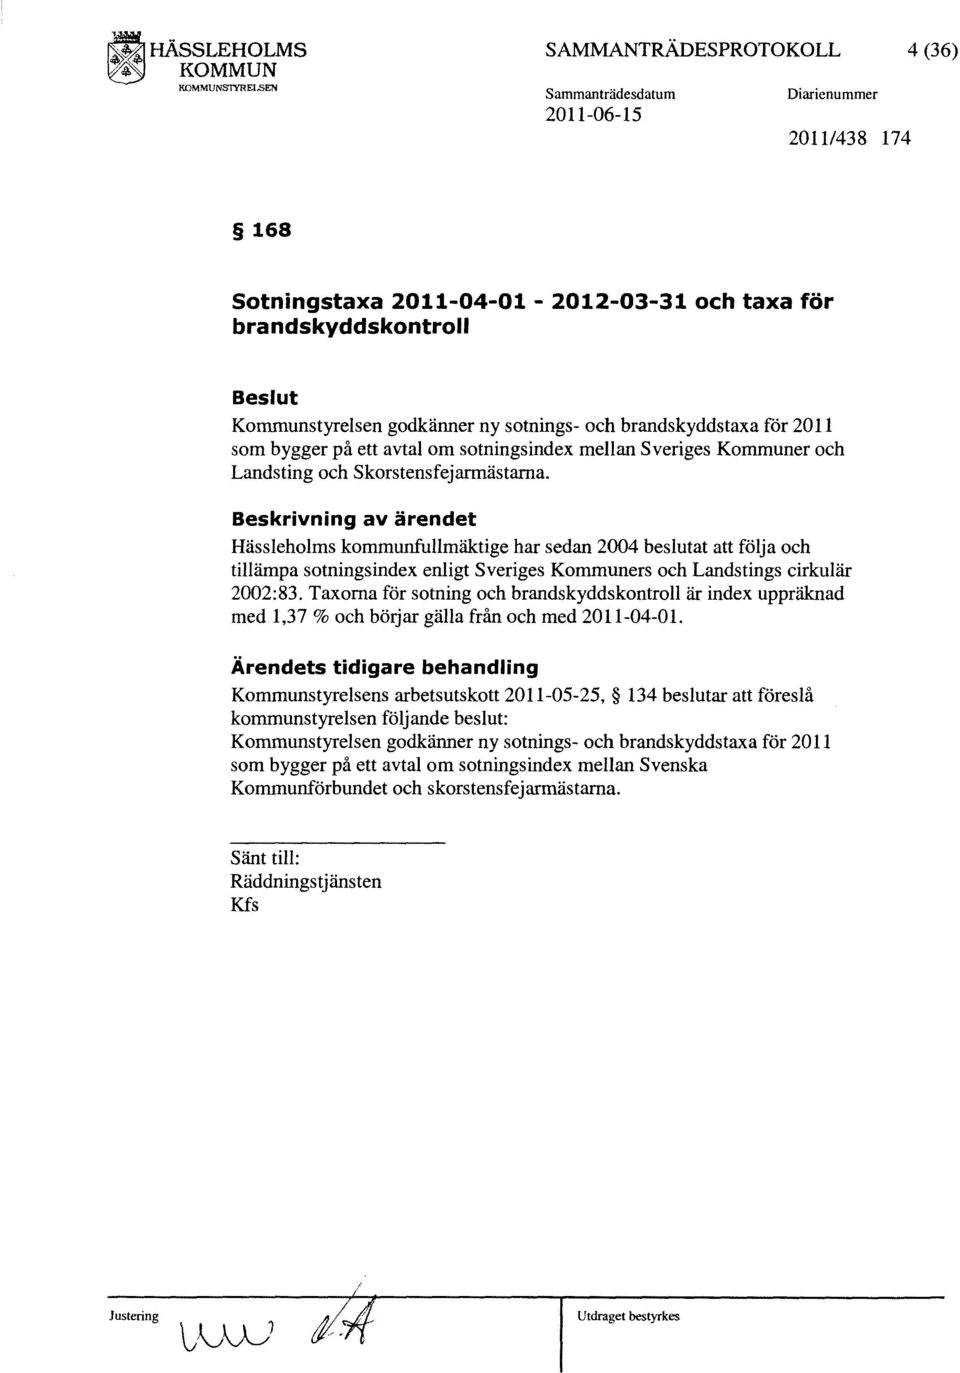 Hässleholms kommunfullmäktige har sedan 2004 beslutat att följa och tillämpa sotningsindex enligt Sveriges Kommuners och Landstings cirkulär 2002:83.